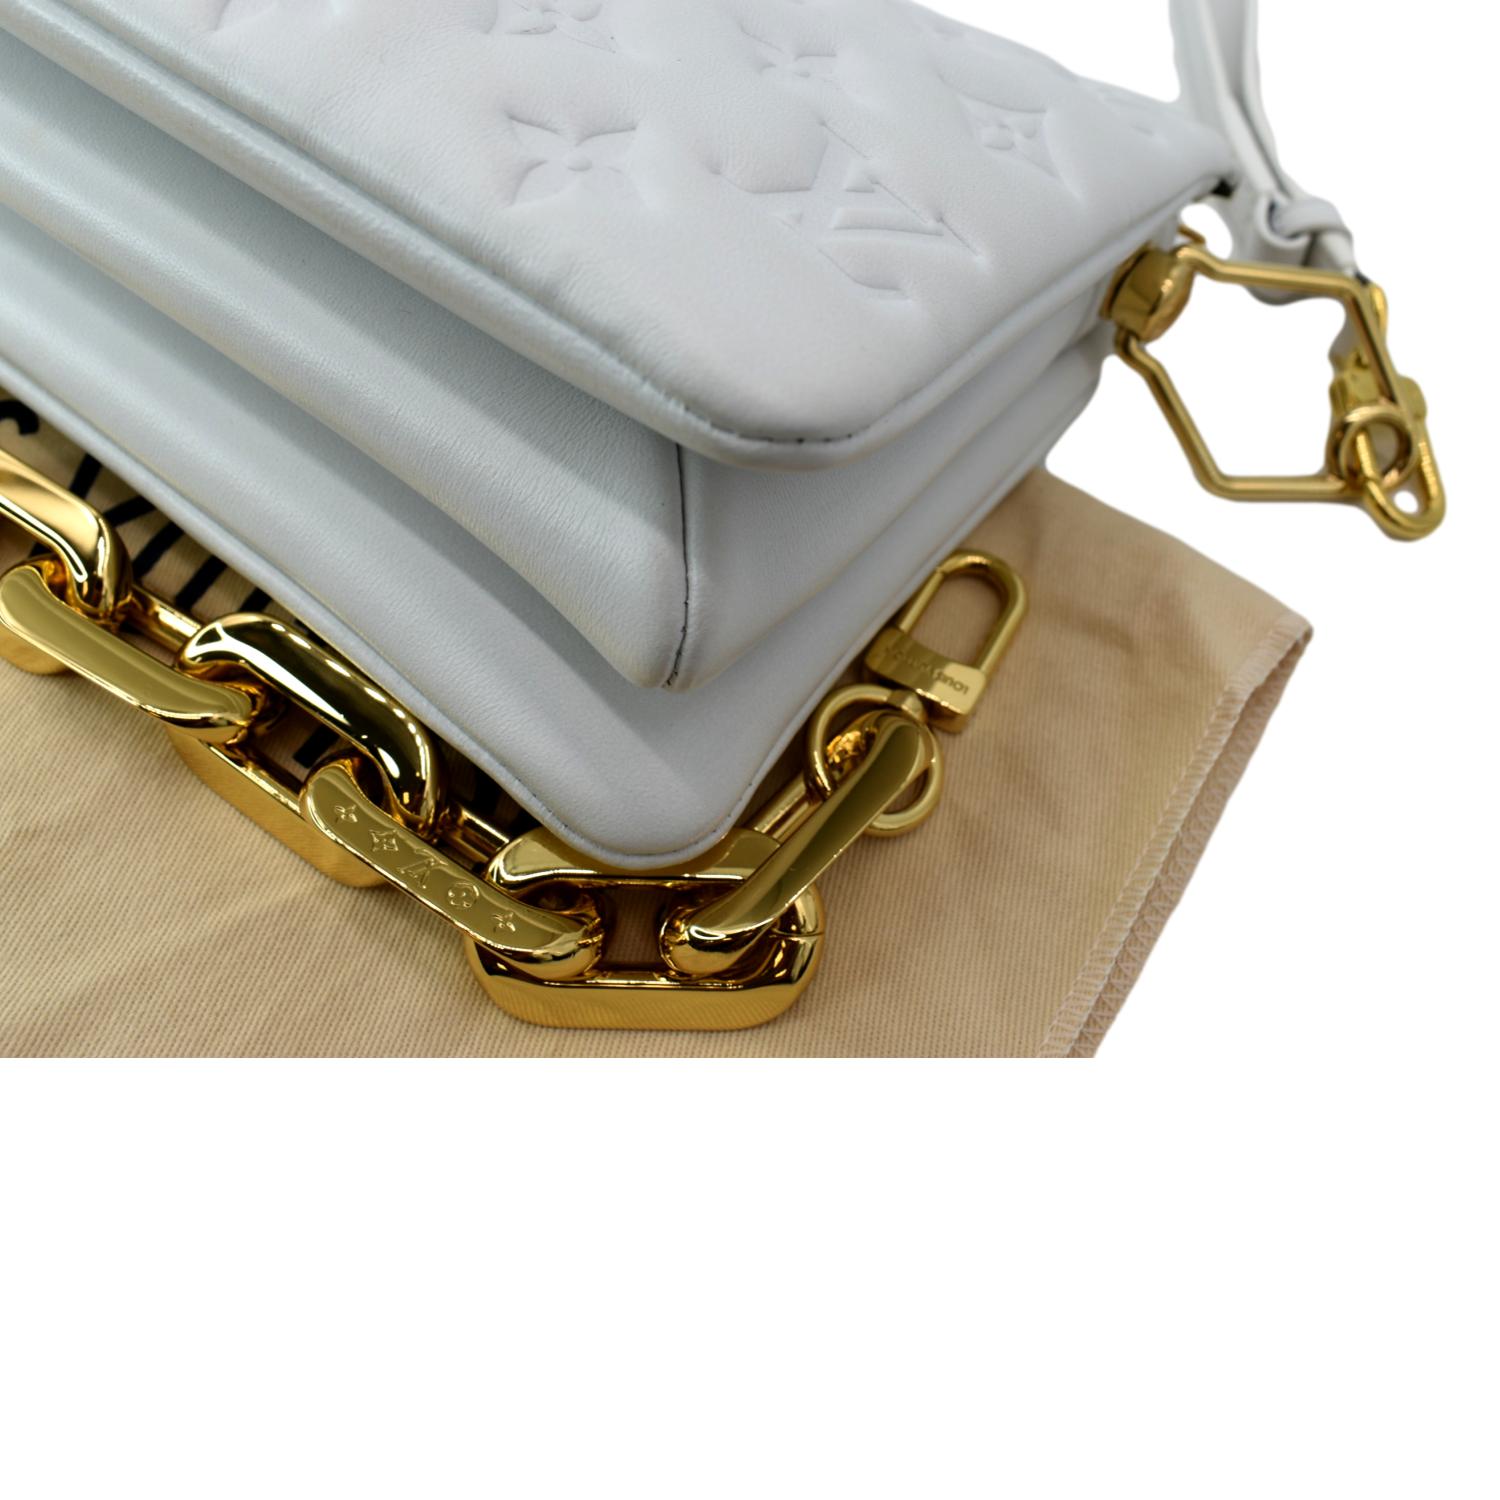 Louis Vuitton Monogram Coussin BB - White Shoulder Bags, Handbags